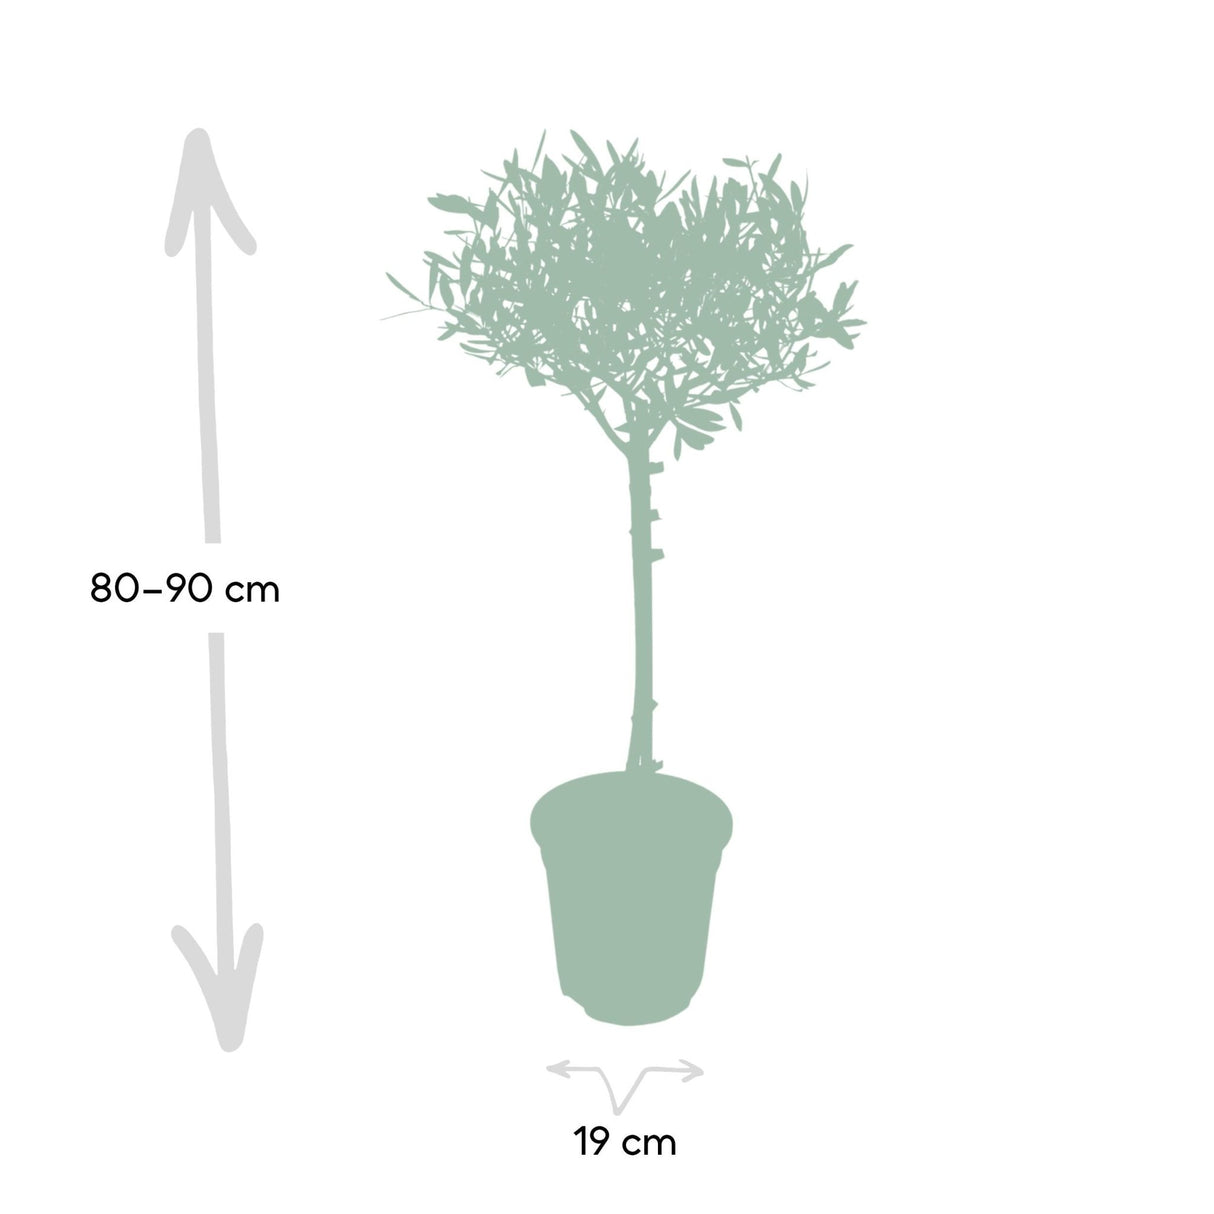 Livraison plante - Olivier olea - 90cm - Ø19 - arbuste fruitier - Plante extérieur